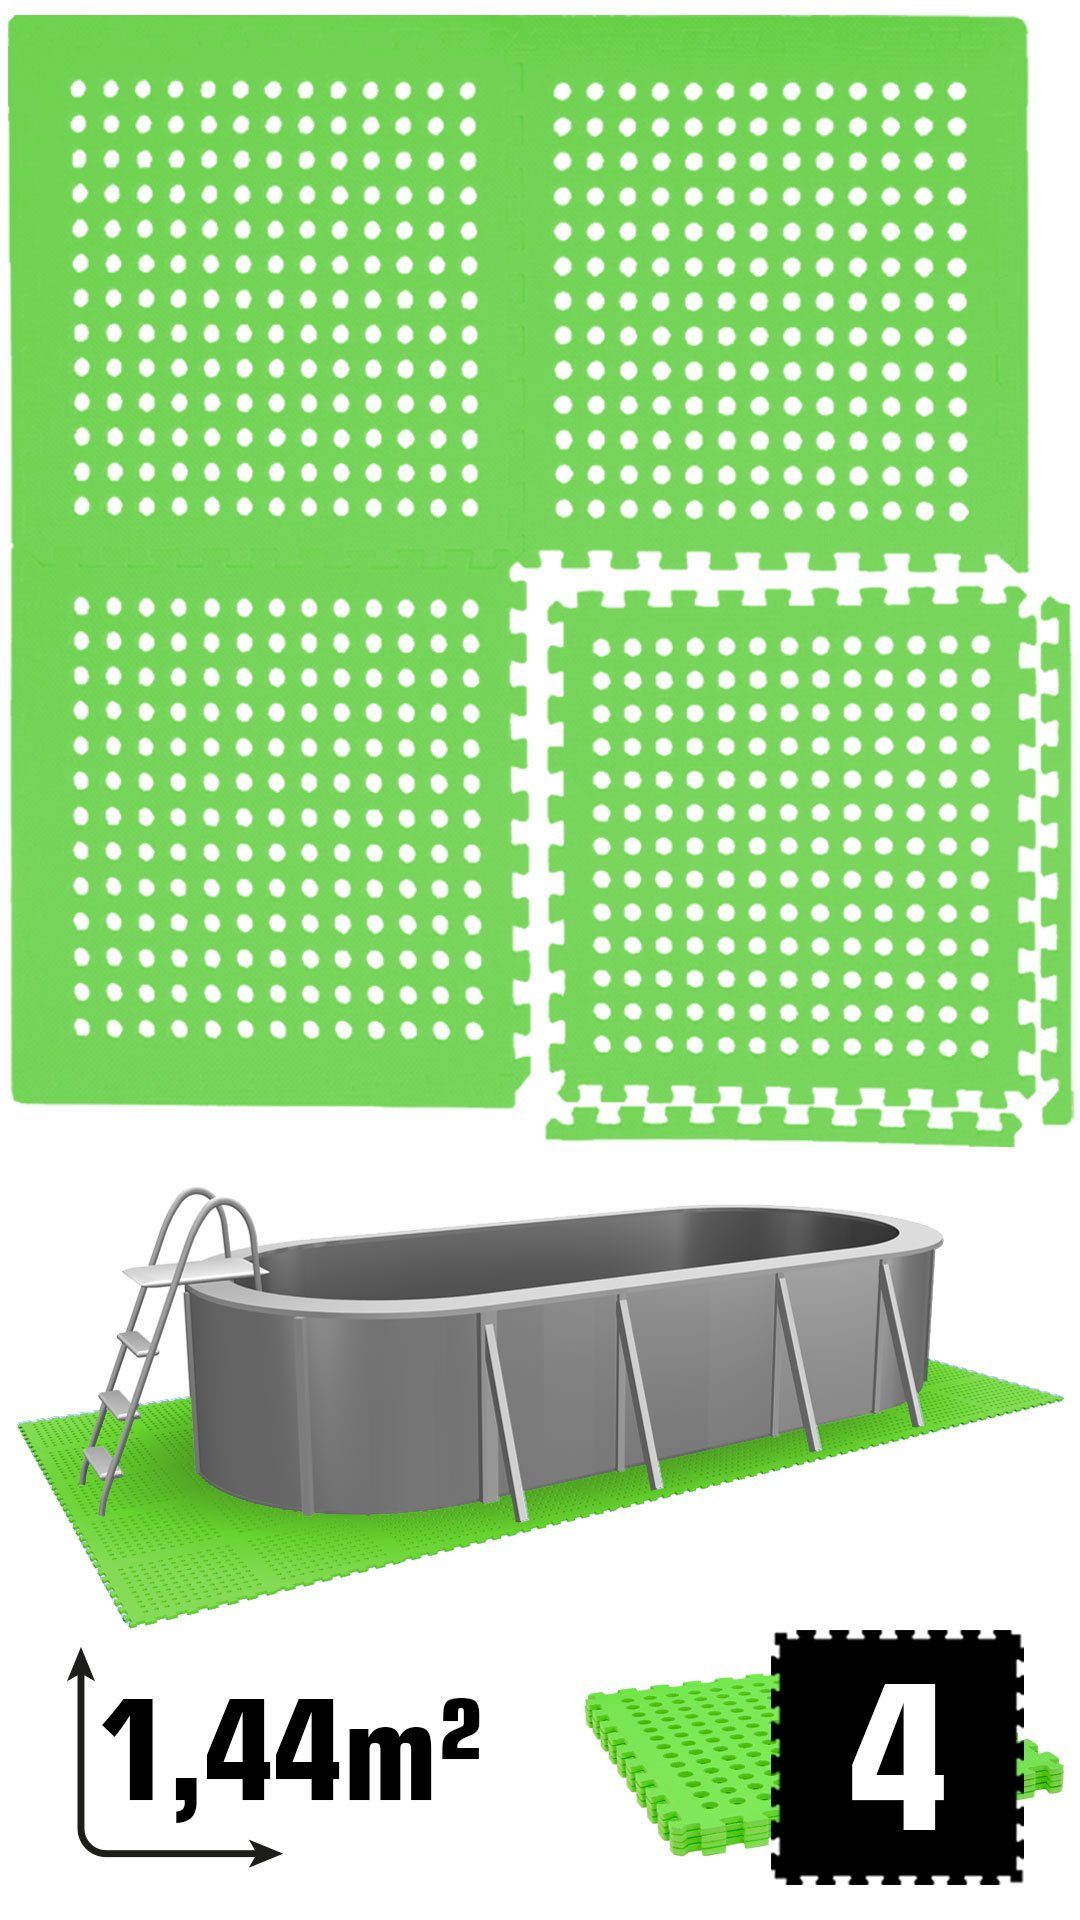 eyepower Bodenmatte Poolmatte Bodenmatte 1,59qm Bodenfliese für Pool, Stecksystem rutschfest Grün